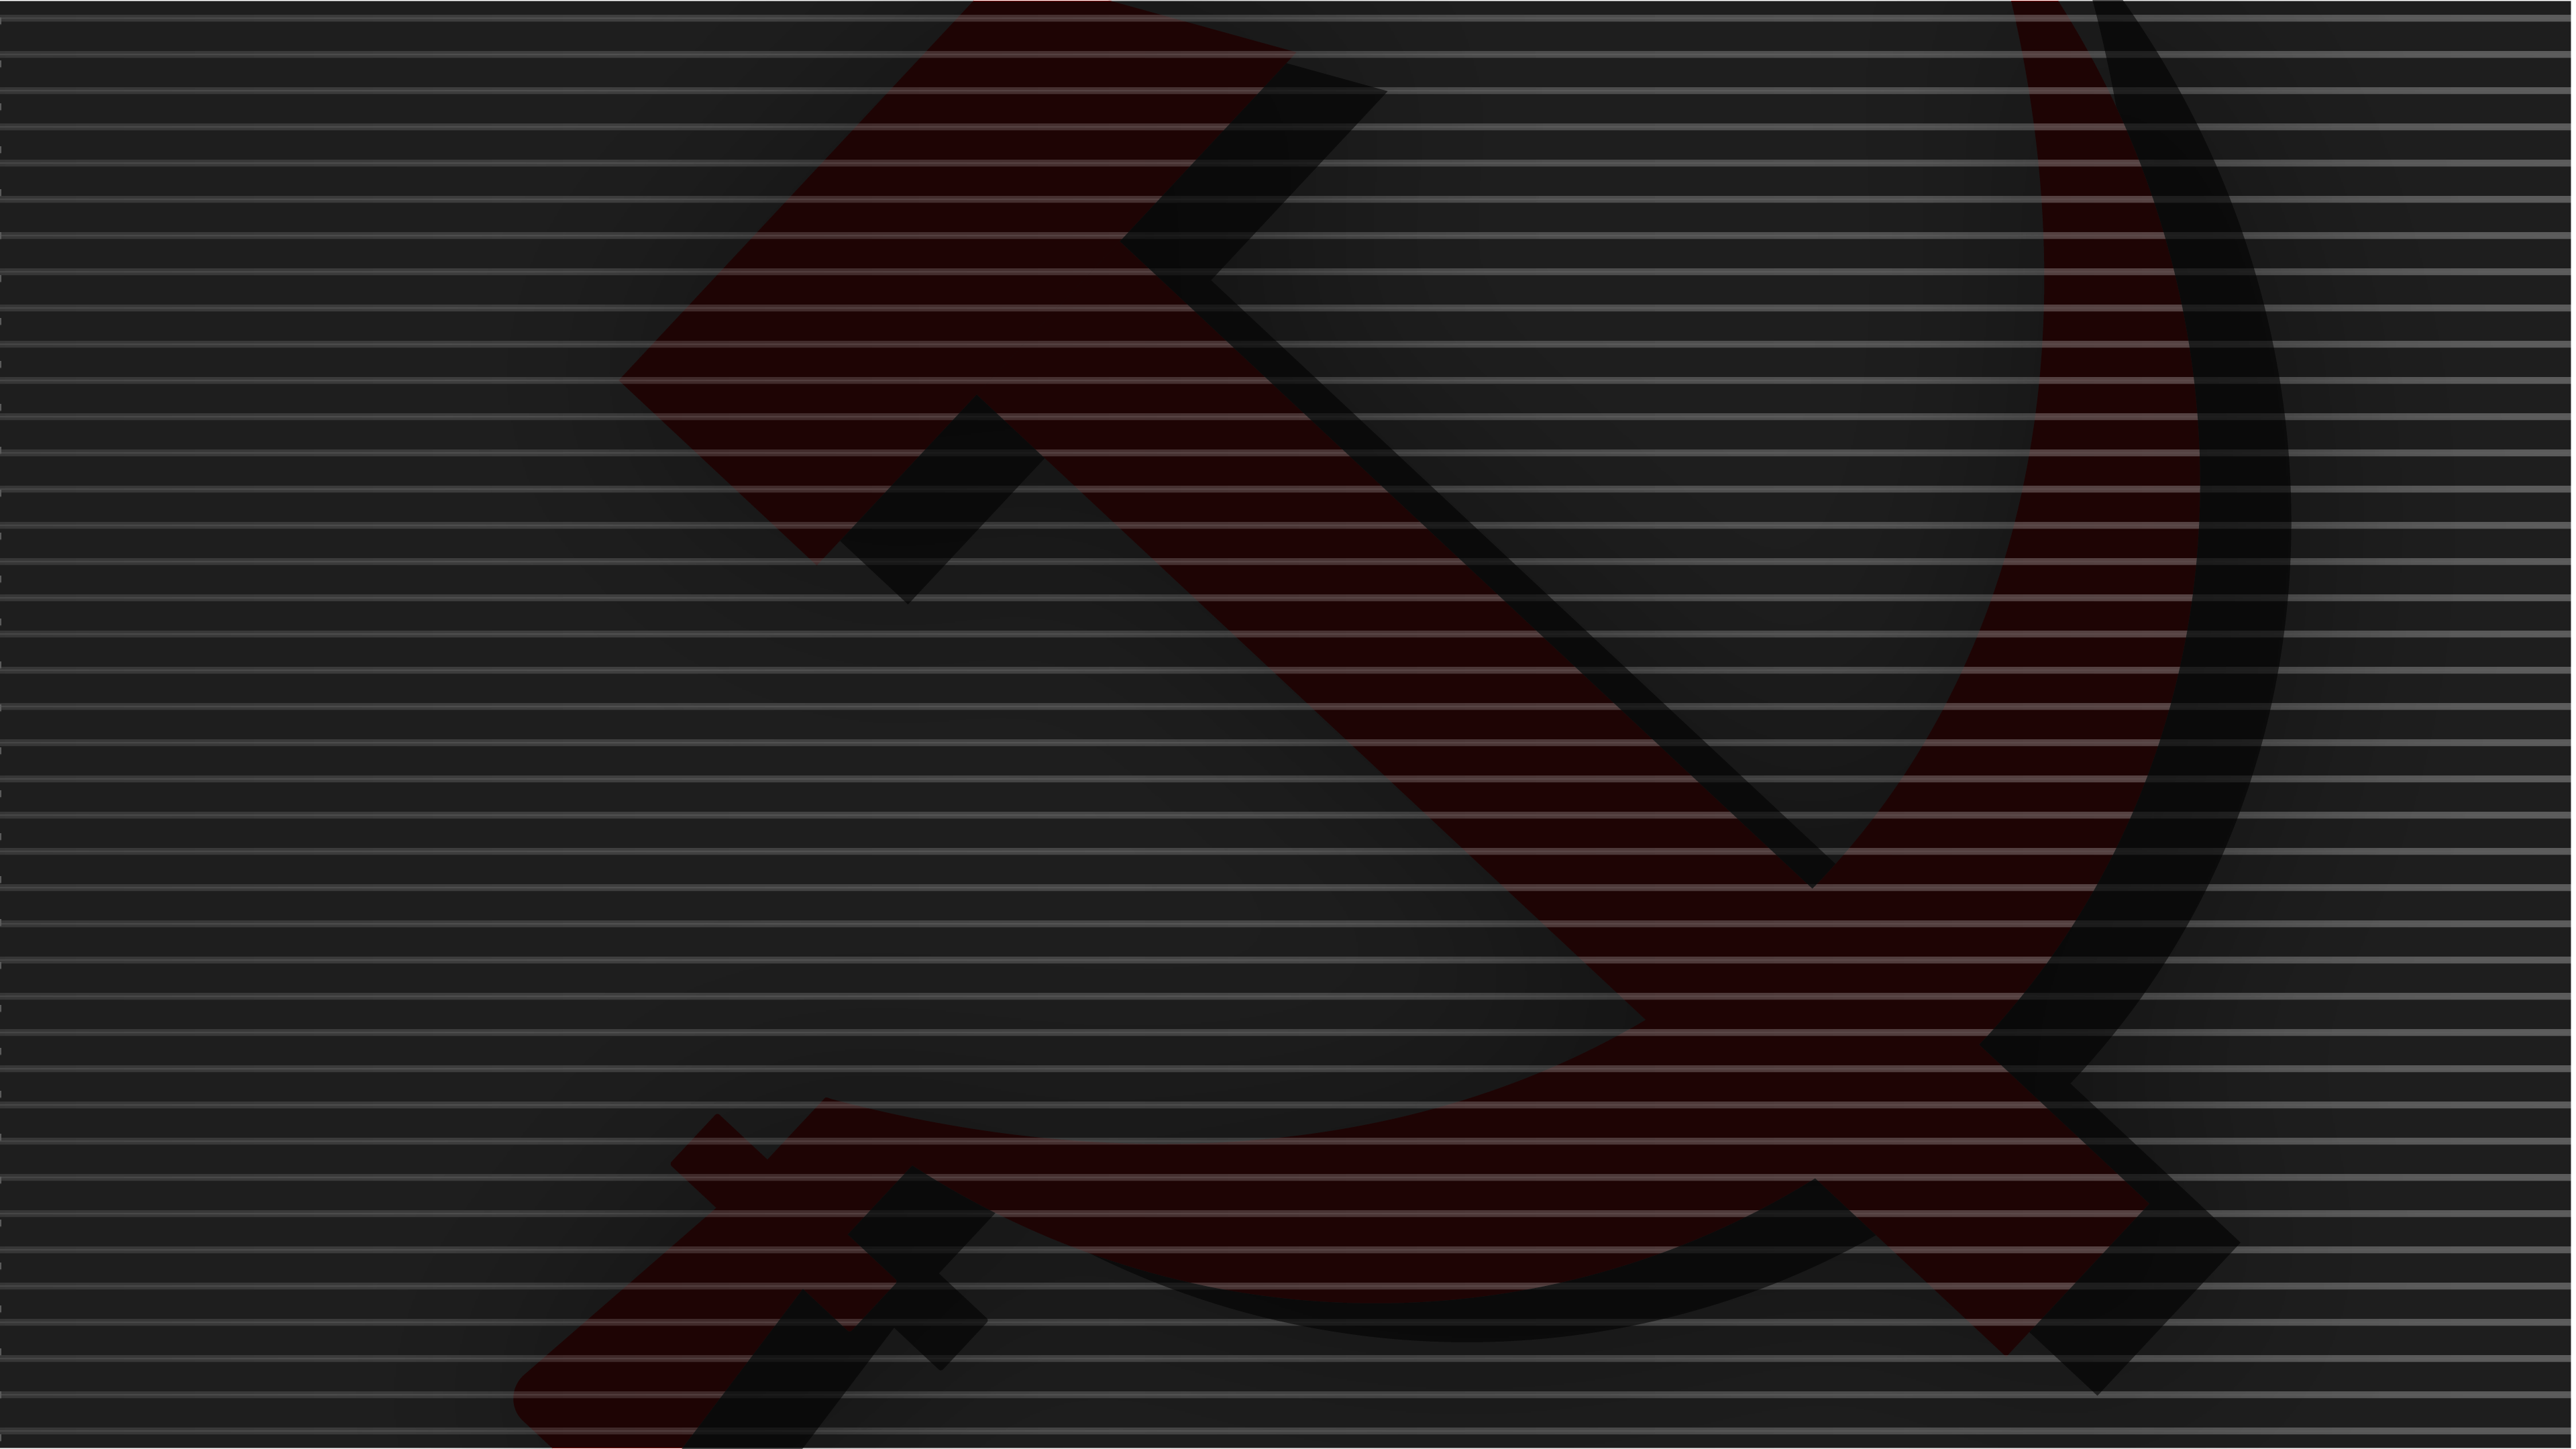 Communism Dark Red Hammer And Sickle Lines 3840x2160